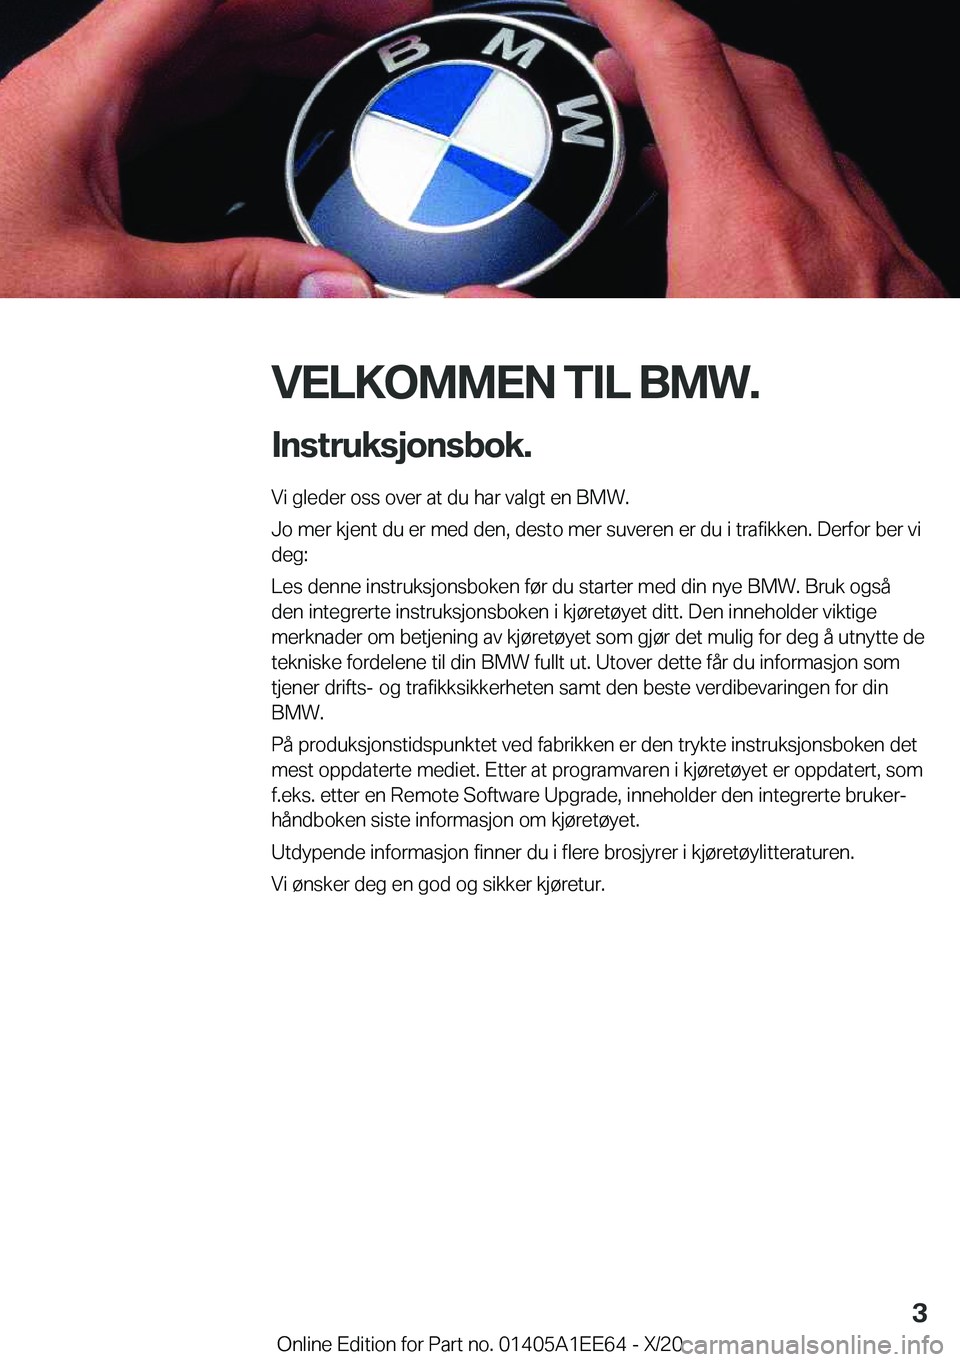 BMW 8 SERIES CONVERTIBLE 2021  InstruksjonsbØker (in Norwegian) �V�E�L�K�O�M�M�E�N��T�I�L��B�M�W�.�I�n�s�t�r�u�k�s�j�o�n�s�b�o�k�.
�V�i��g�l�e�d�e�r��o�s�s��o�v�e�r��a�t��d�u��h�a�r��v�a�l�g�t��e�n��B�M�W�.
�J�o��m�e�r��k�j�e�n�t��d�u��e�r��m�e�d�